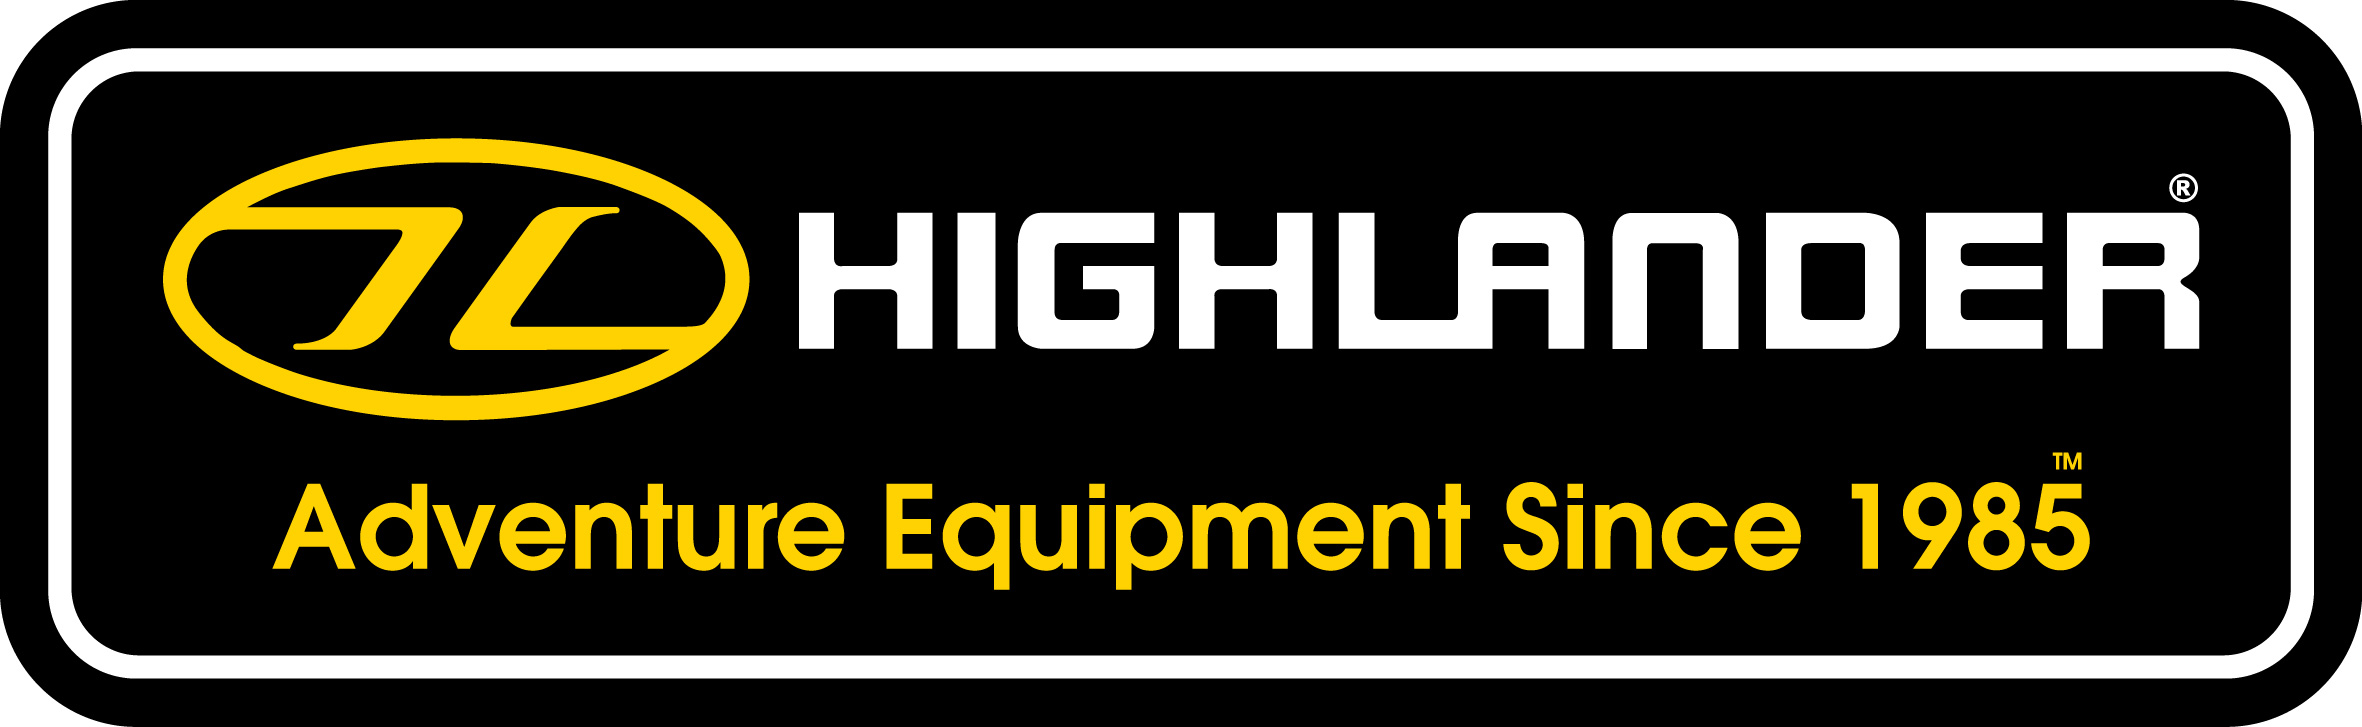 highlander-outdoor-equipment-uitrusting-logo